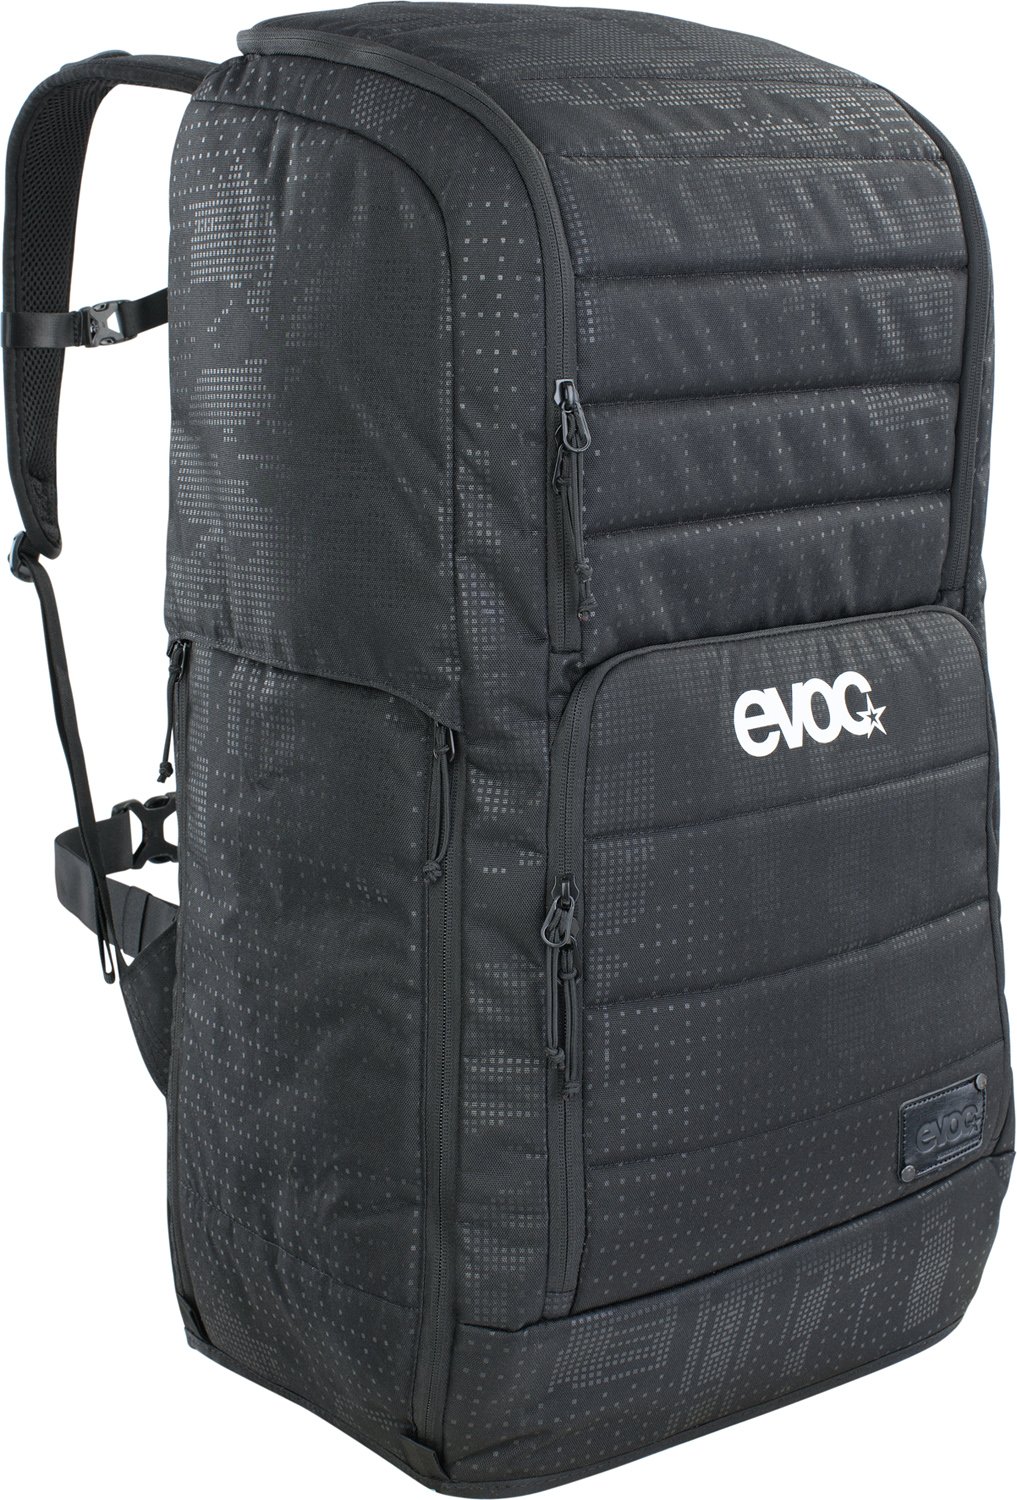 EVOC Gear Backpack 90